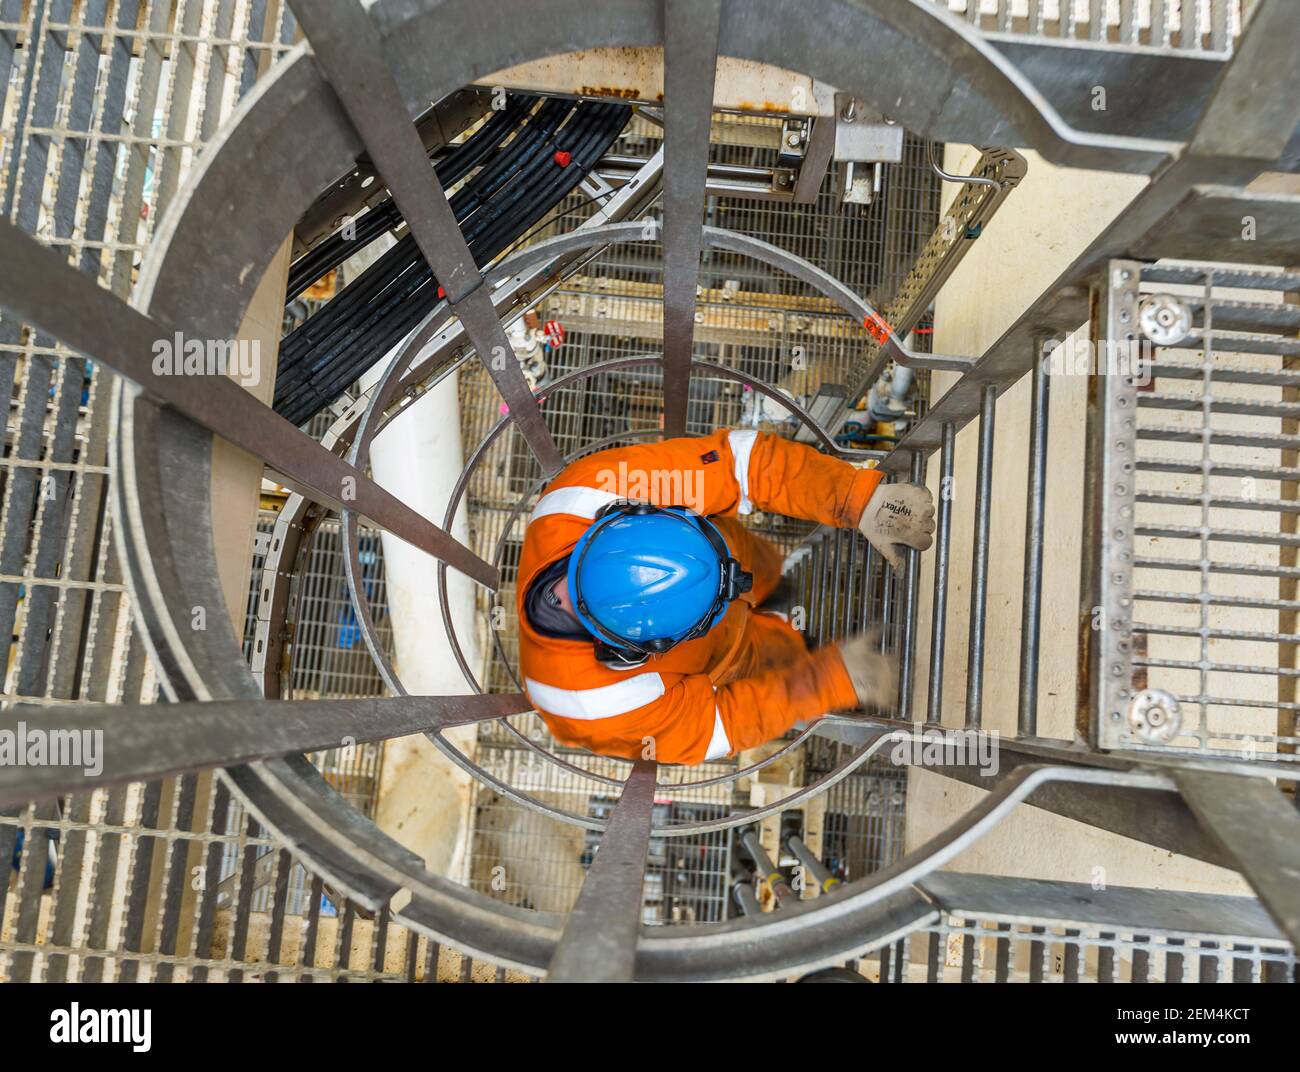 Un travailleur portant une combinaison de chaudière, un casque et des gants descendant une échelle verticale avec cage de sécurité Banque D'Images